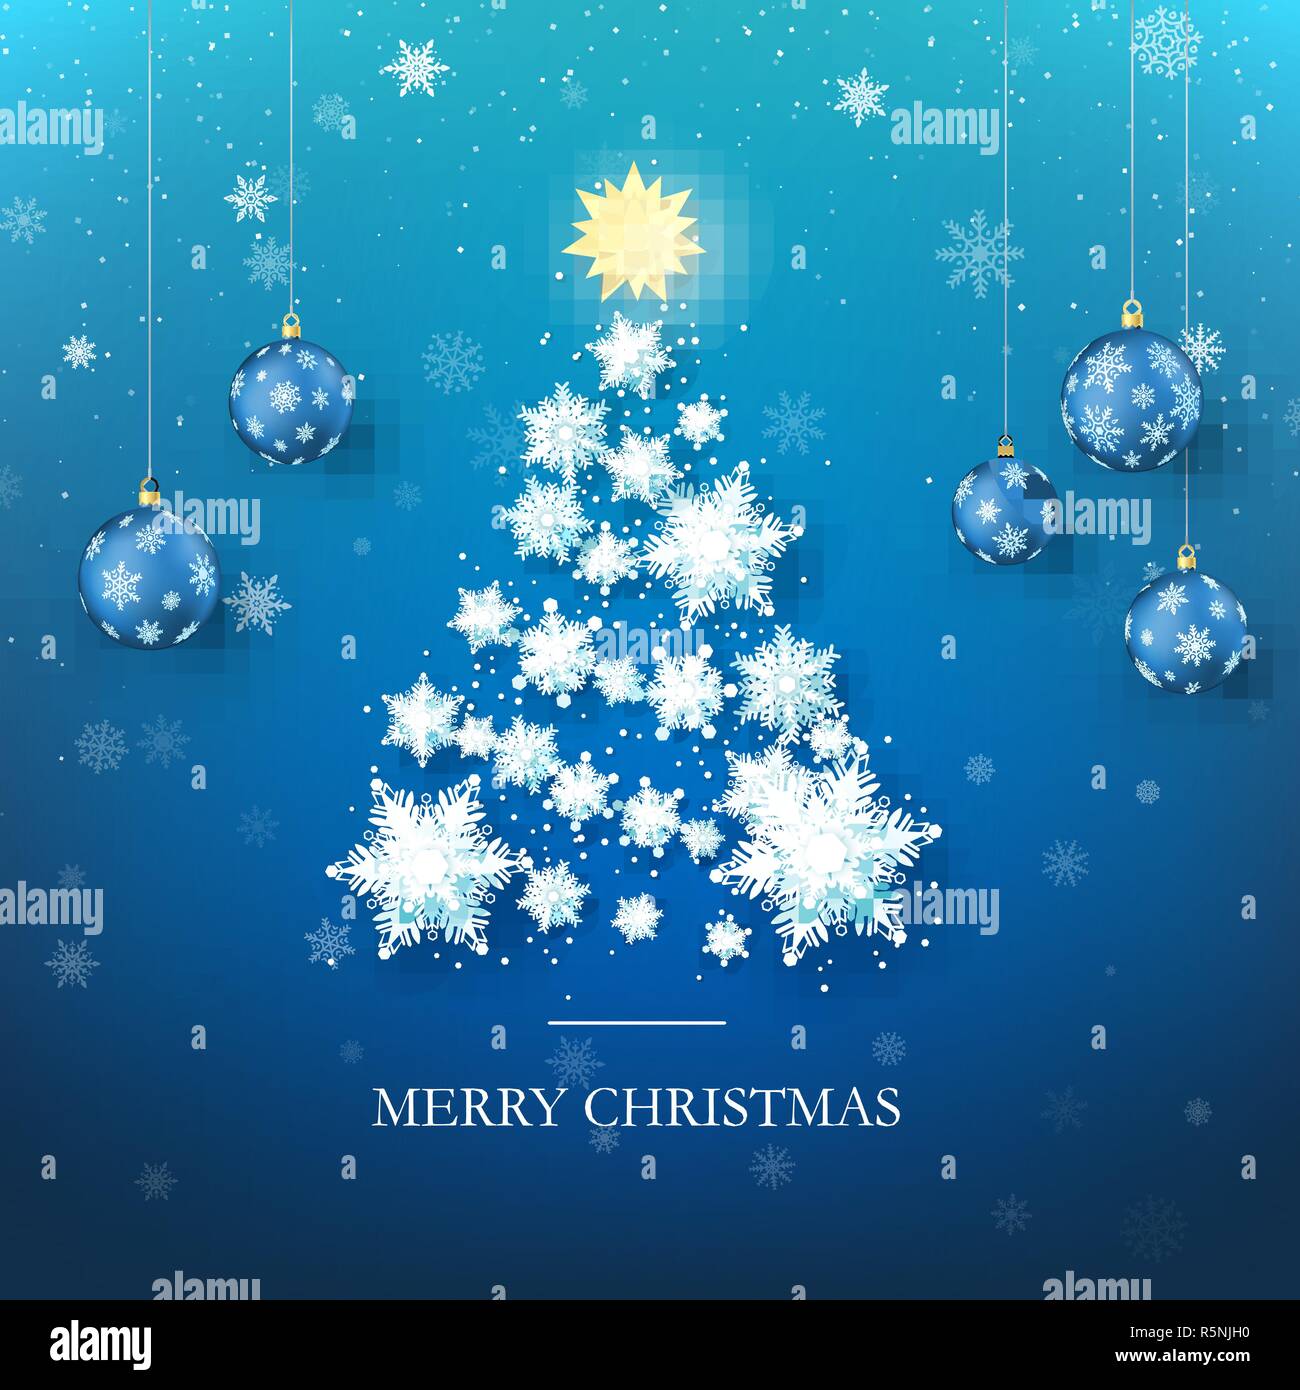 Weihnachtsbaum Grußkarte. Neues Jahr Baum Silhouette aus Papier Schneeflocken und blaue Weihnachtskugeln für den Hintergrund. Frohes Neues Jahr und Merry Christm Stock Vektor